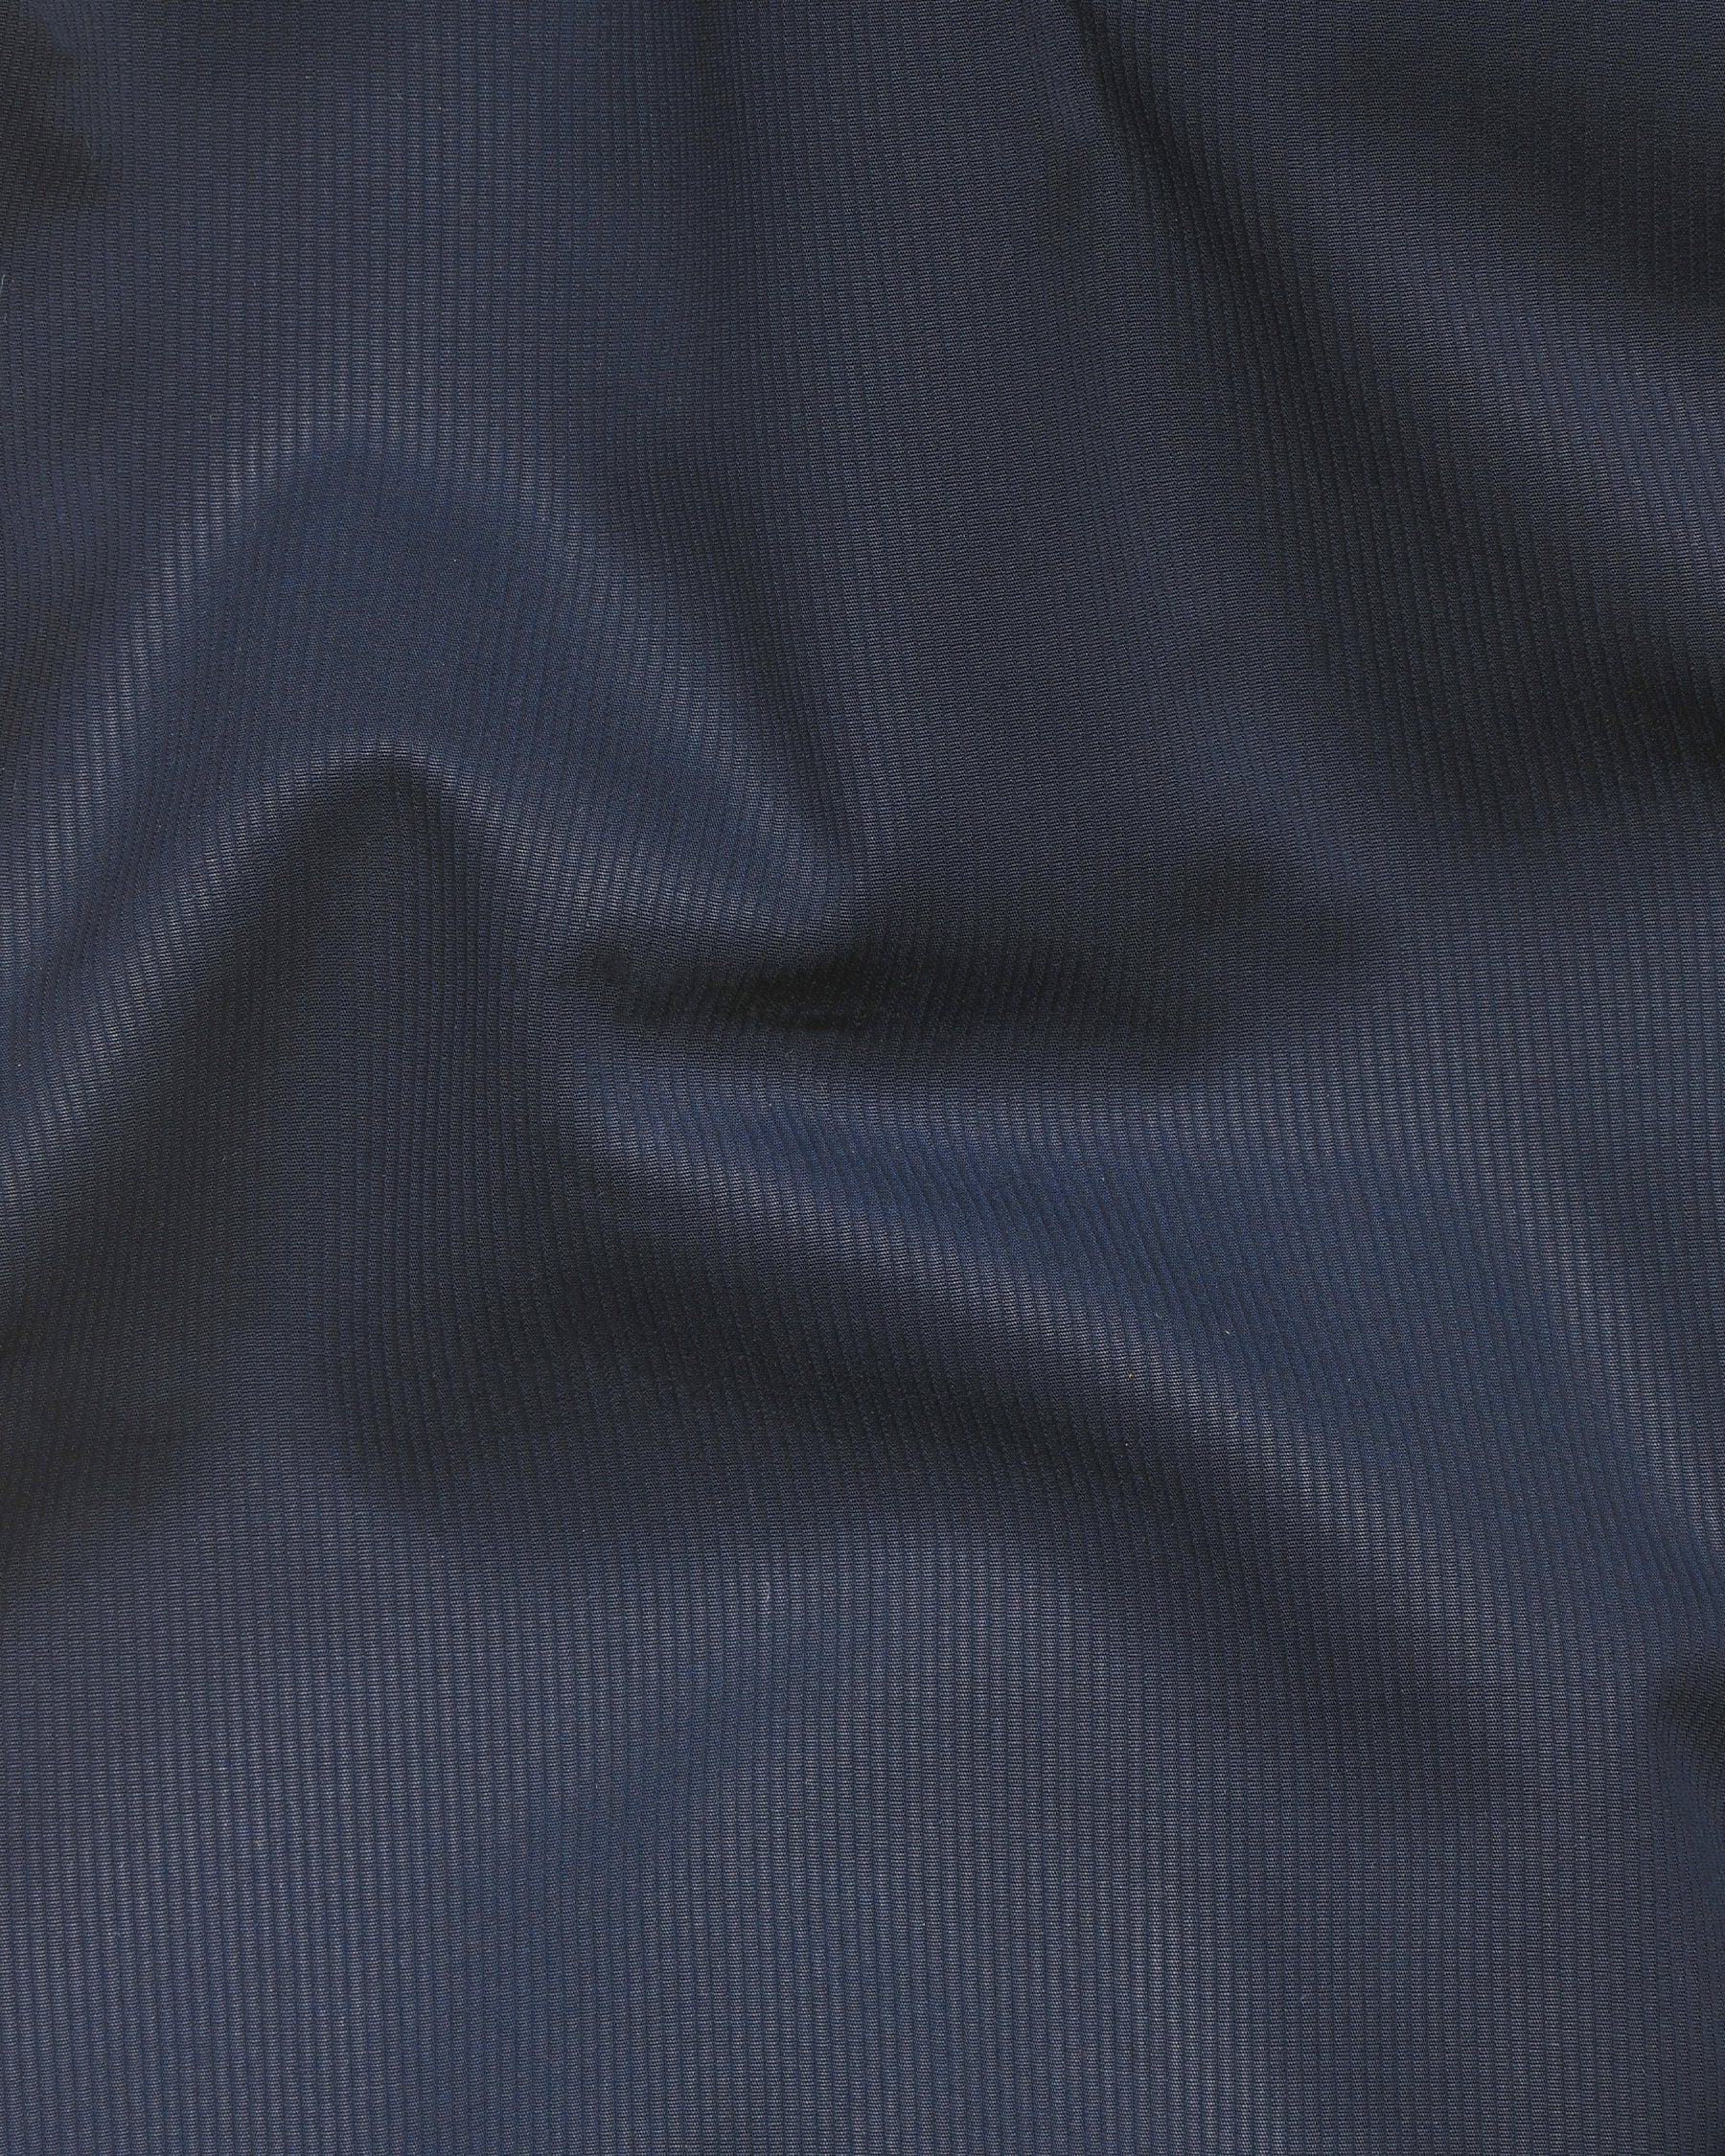 Navy Subtle Pinstriped Premium Cotton Sport Blazer